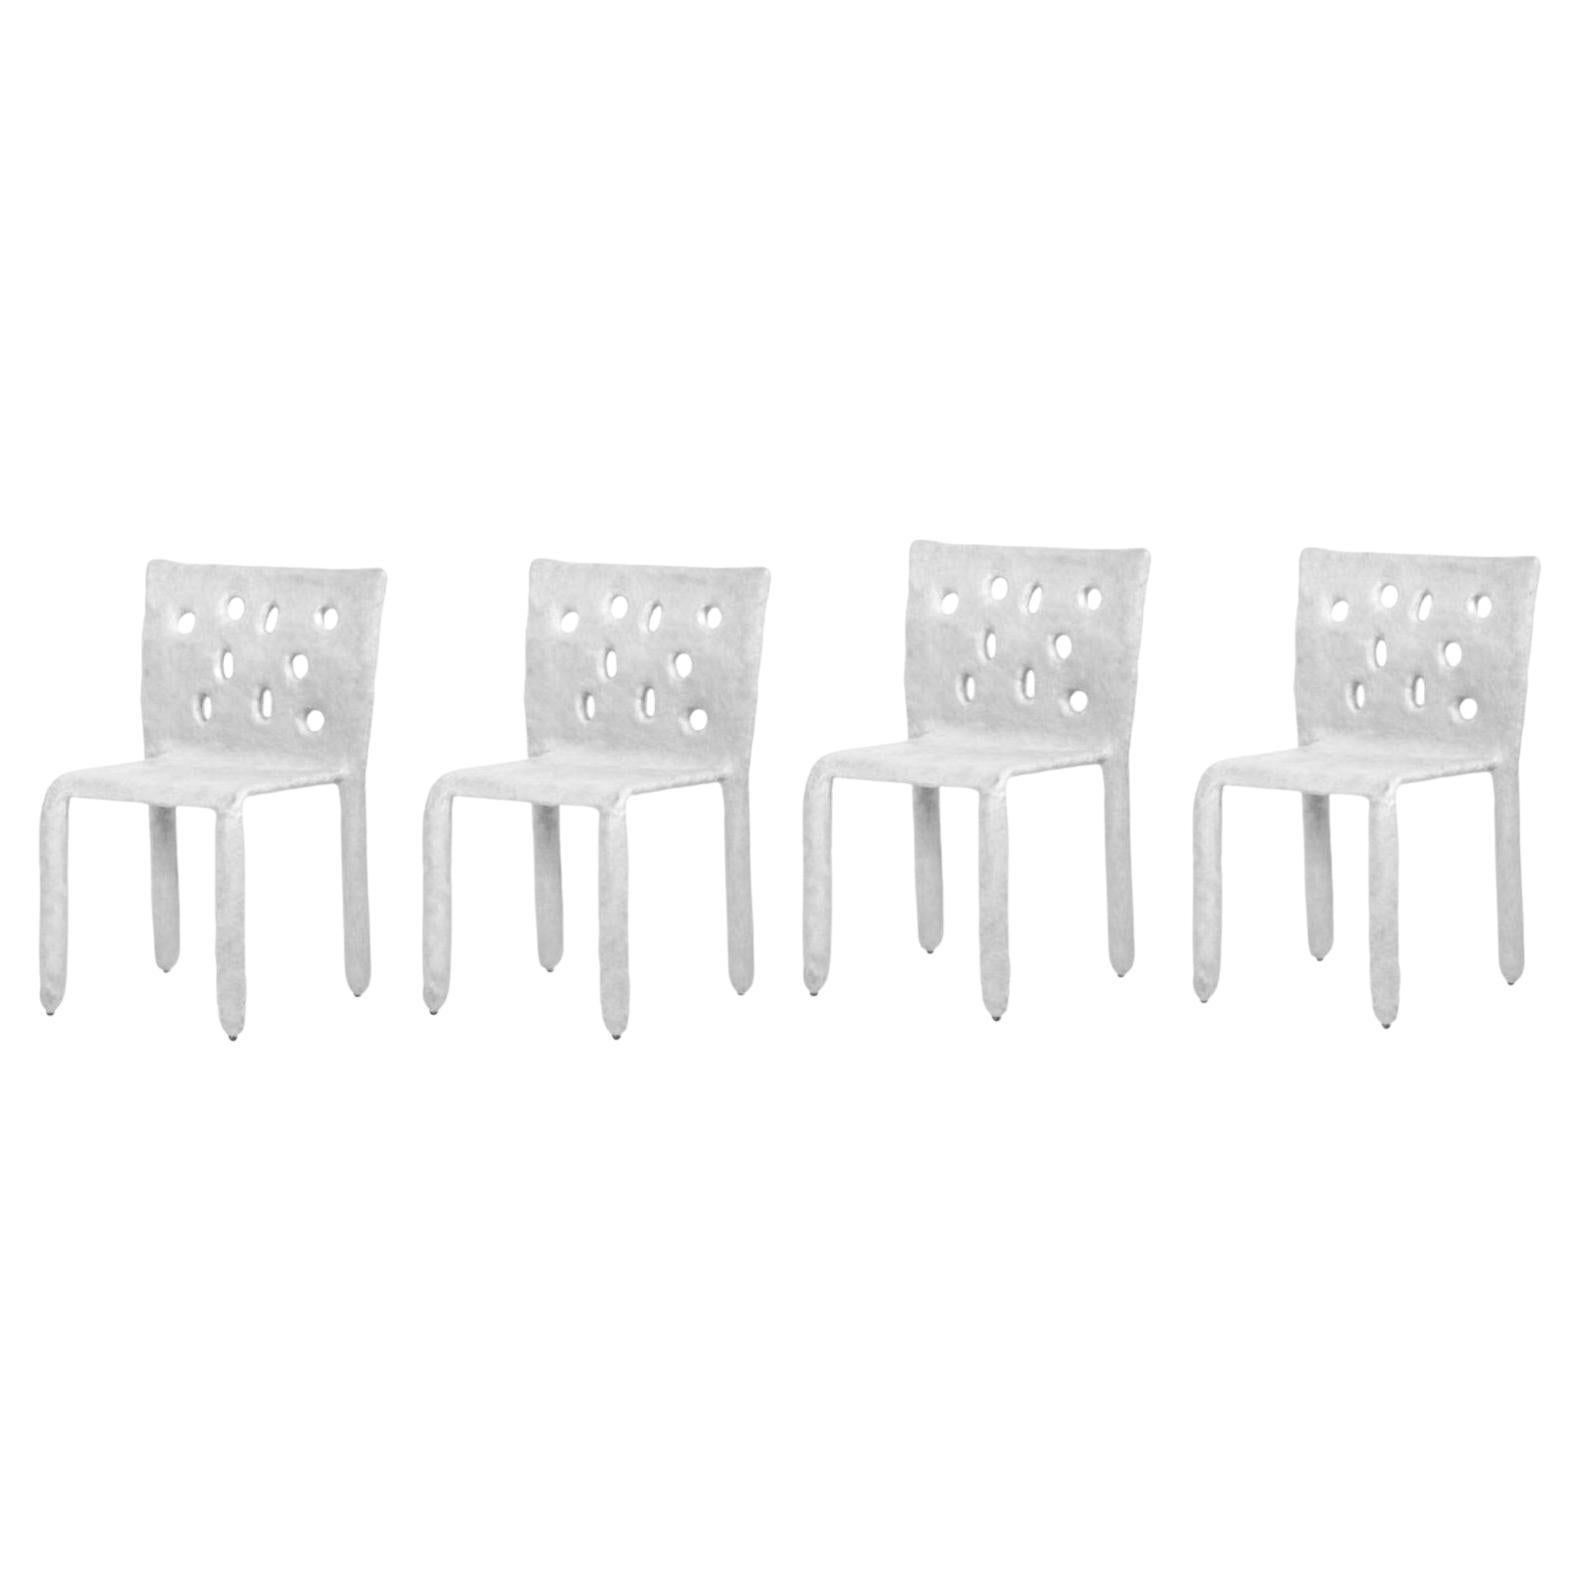 Satz von 4 weißen geformten zeitgenössischen Stühlen von FAINA